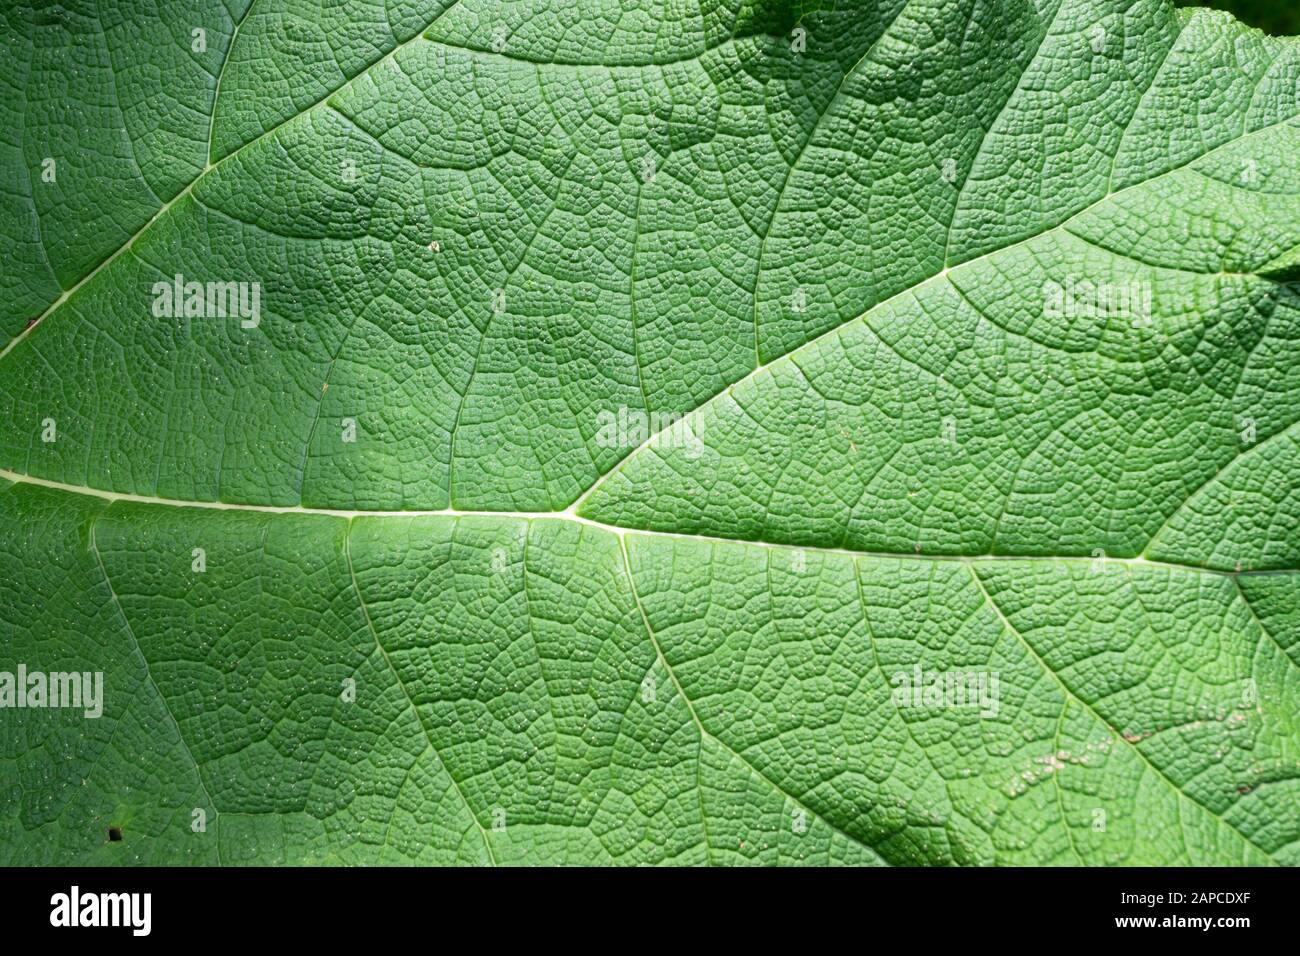 Detailliertes Bild eines Gunnera Manicata-Blattes, das auch als riesiger Rhabarber bezeichnet wird Stockfoto